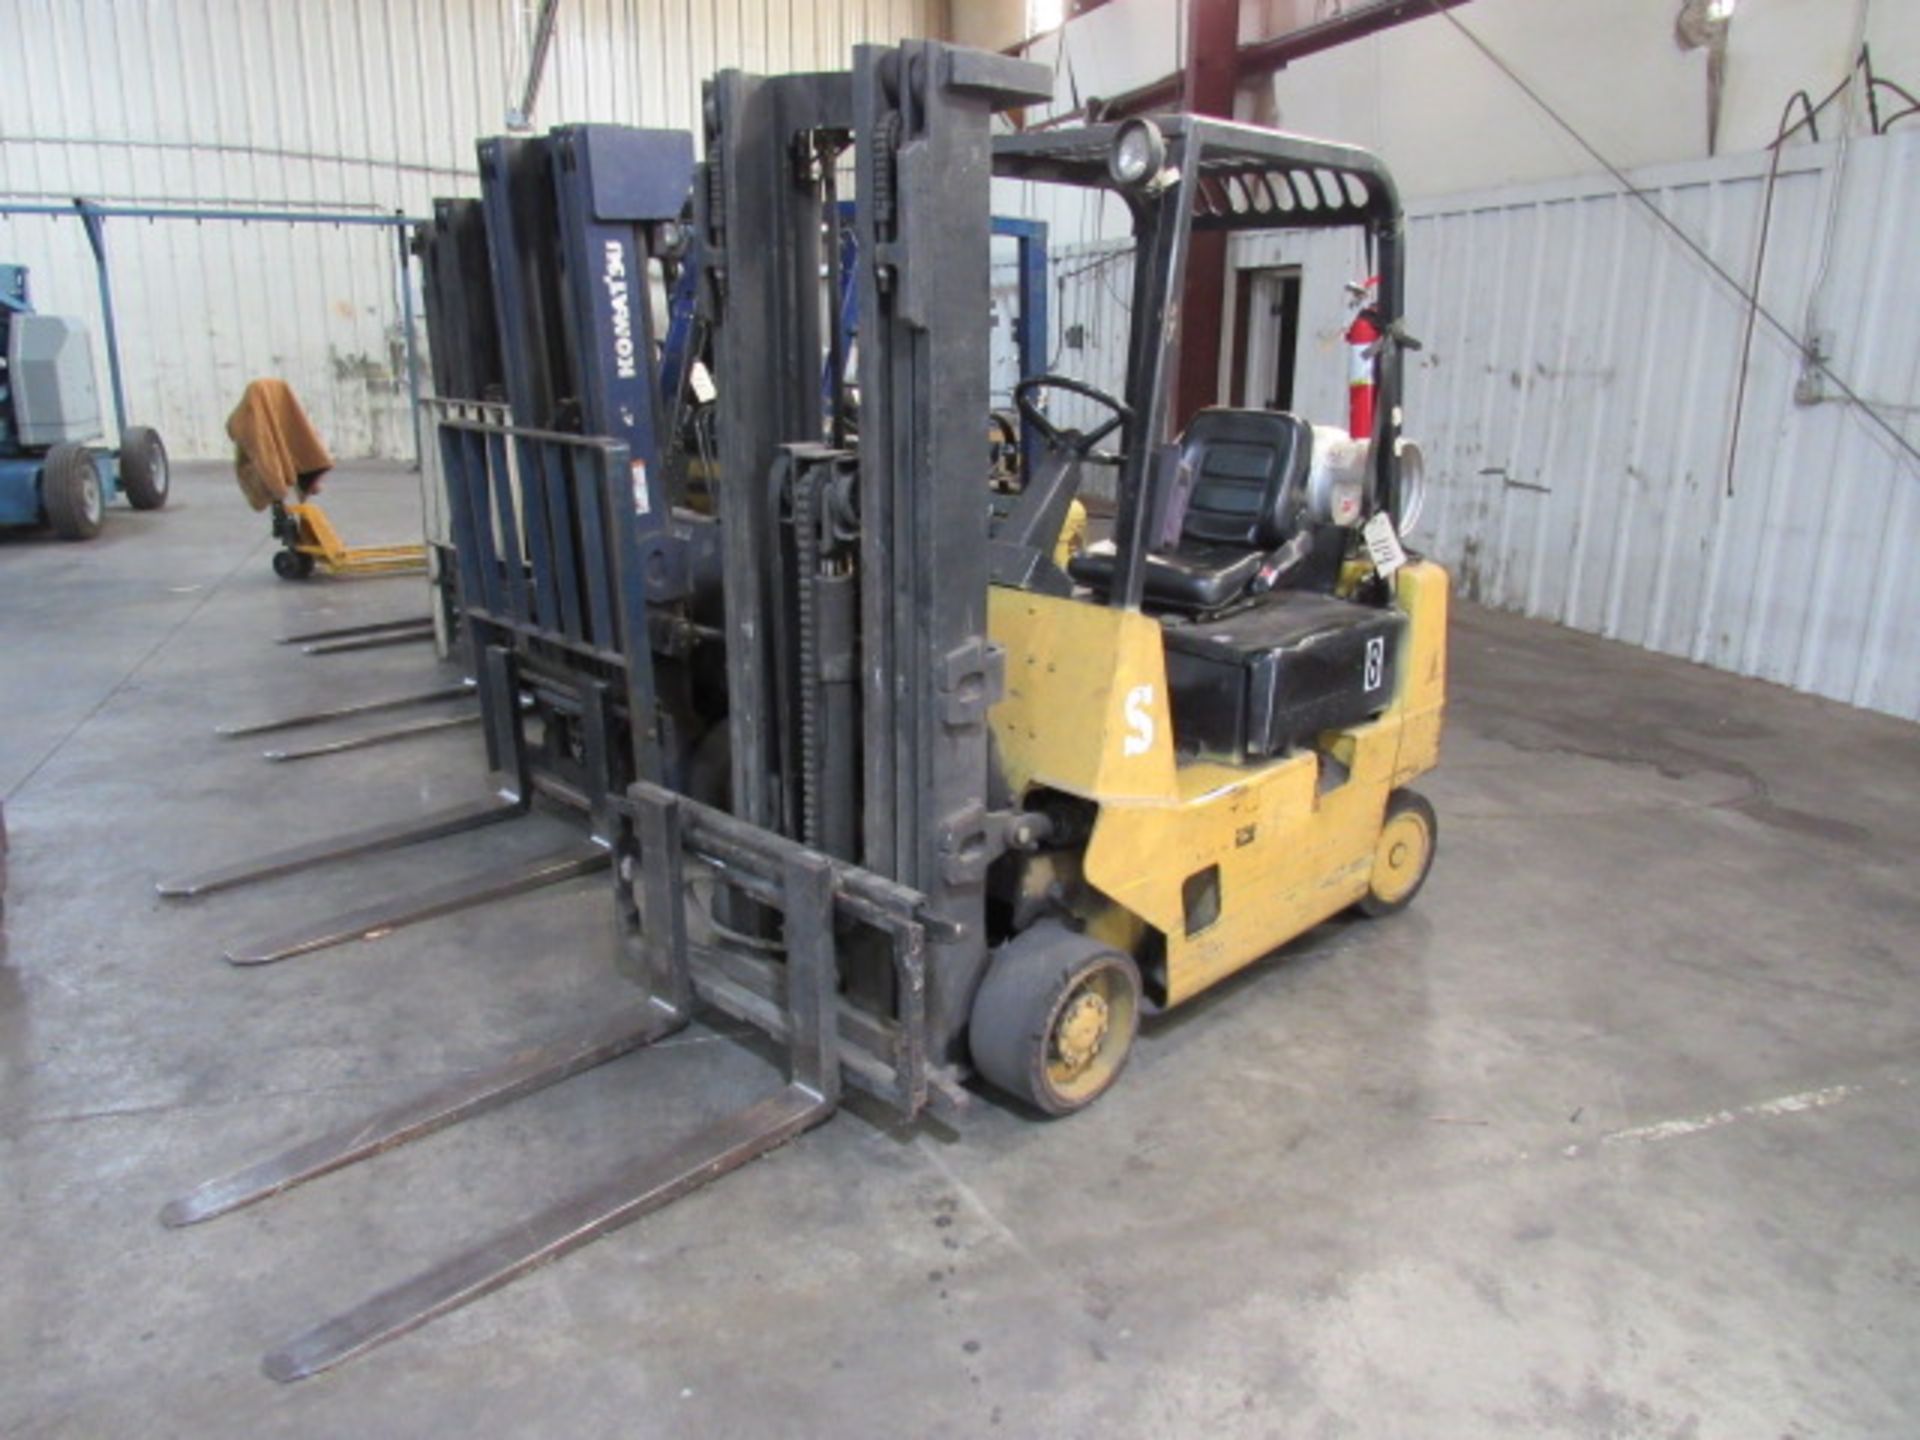 Komatsu 2,500lb LP Forklift with 3 Stage Mast, 42" Forks, Side Shift, sn:603248A - Image 2 of 6